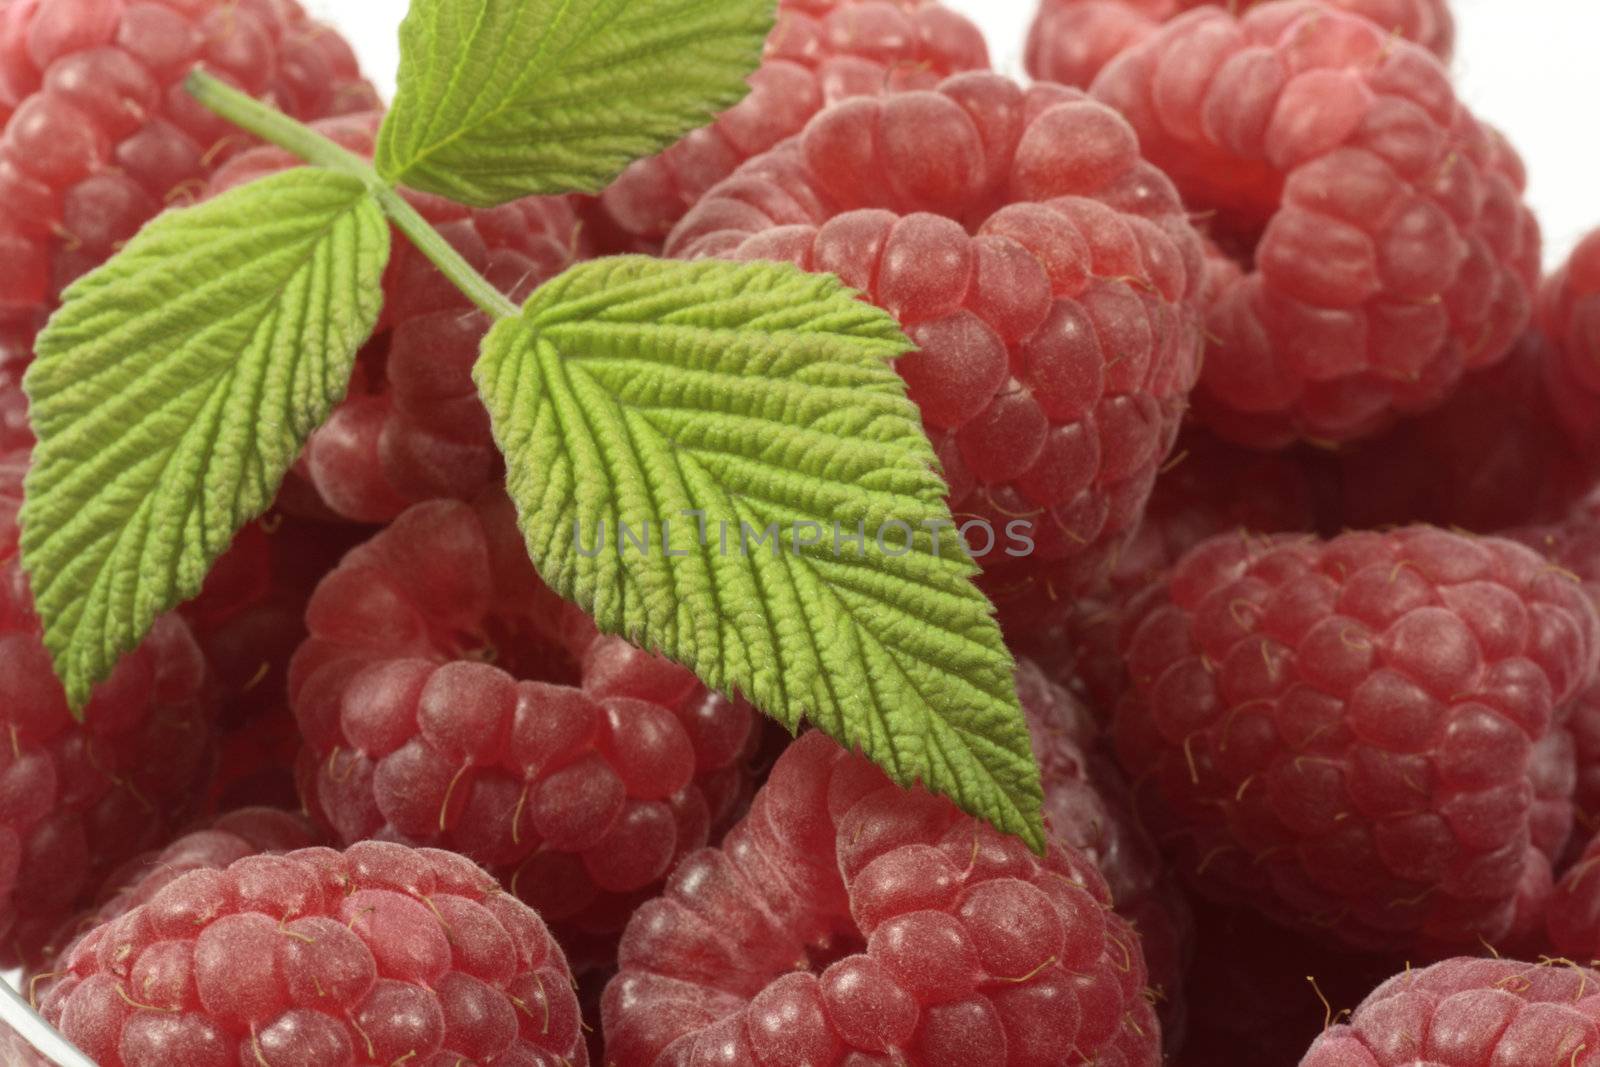 Raspberries by Teamarbeit